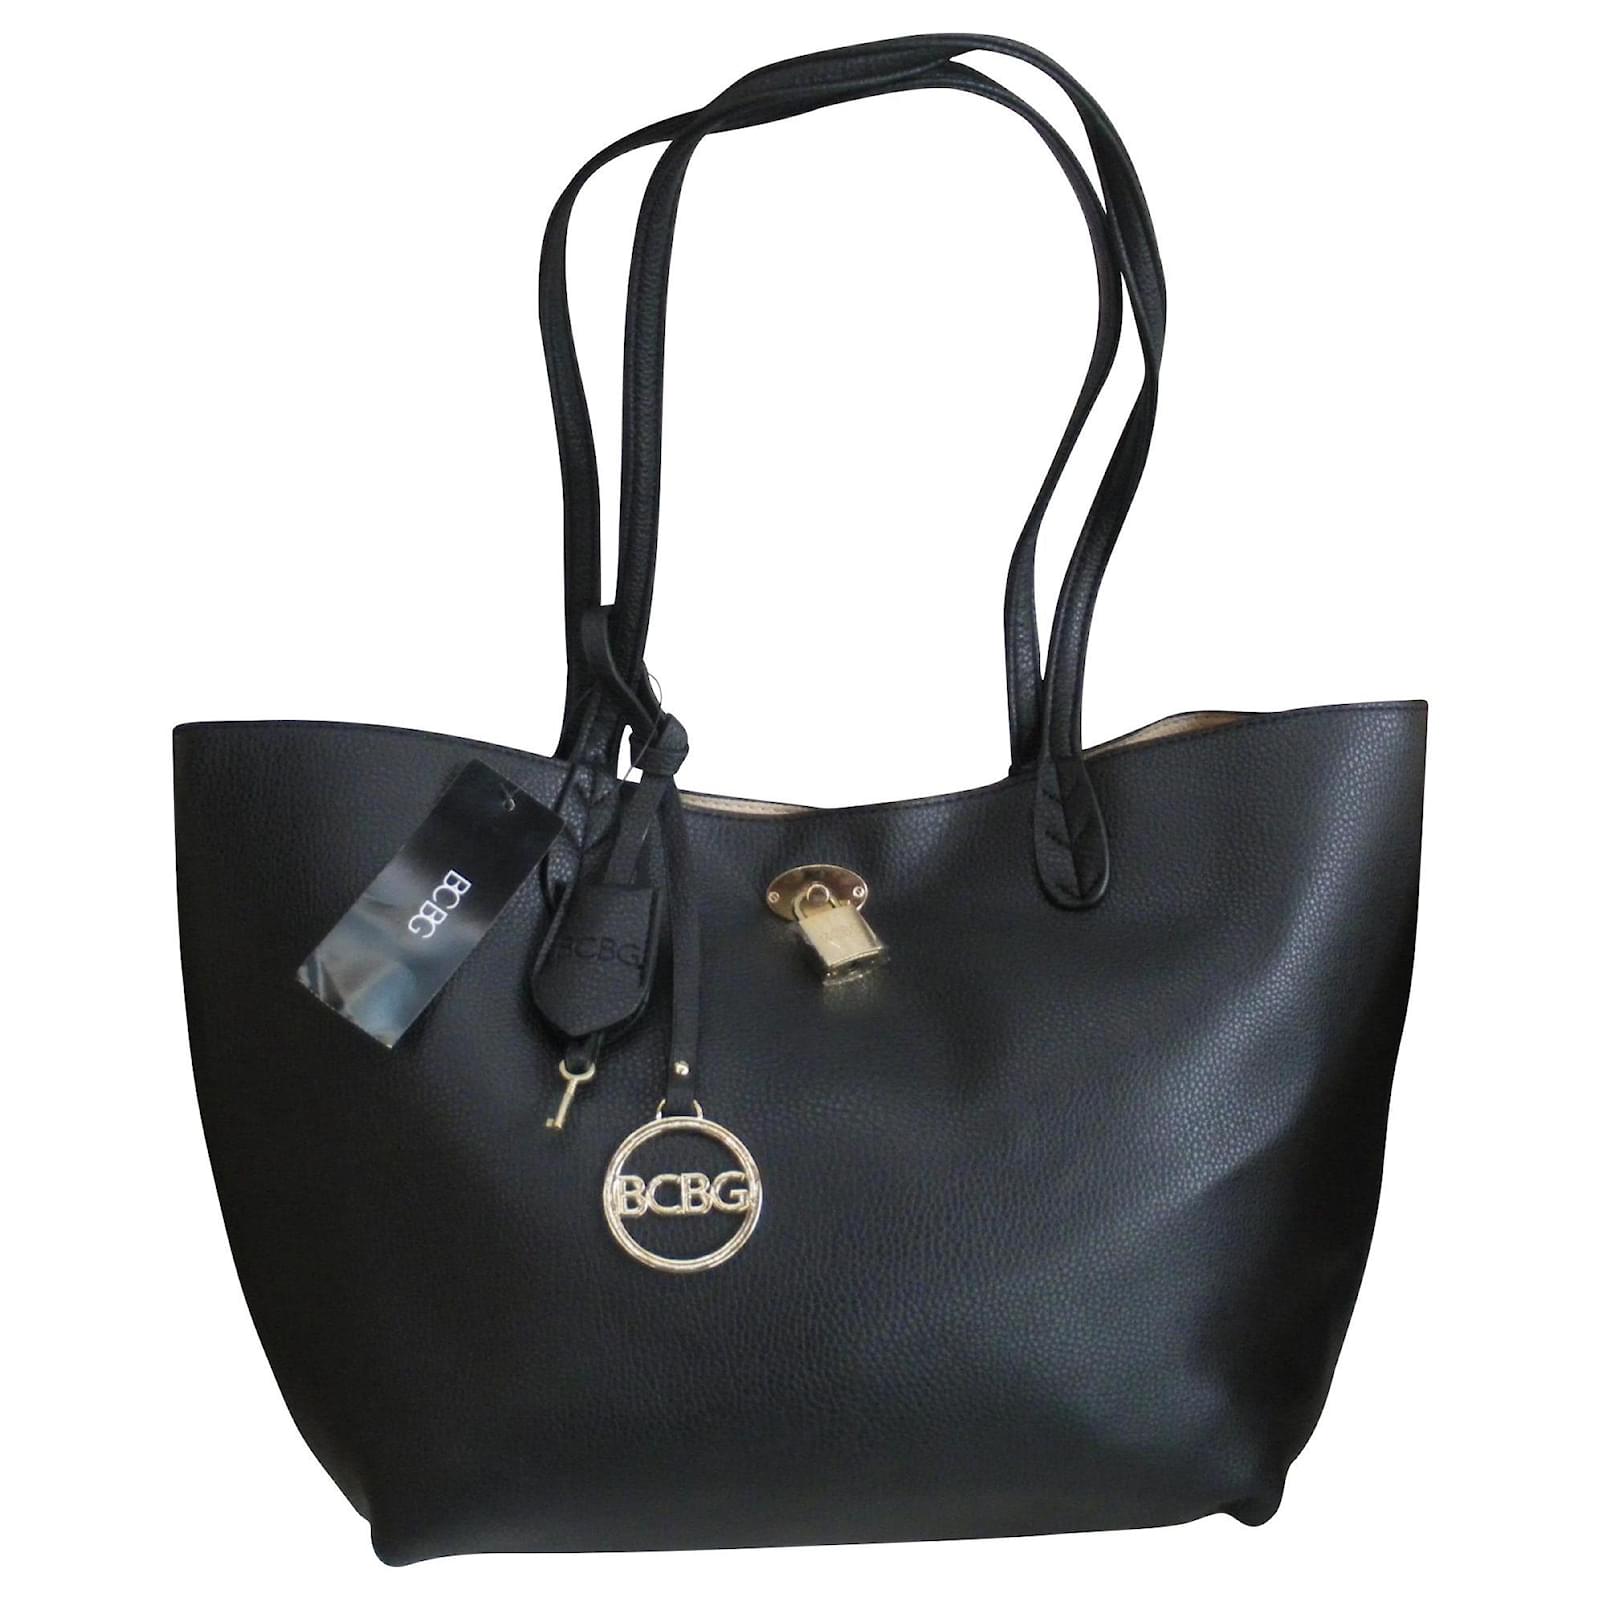 BCBG Paris purse 💕 | Vegan leather tote bag, Convertible tote bag, Womens tote  bags